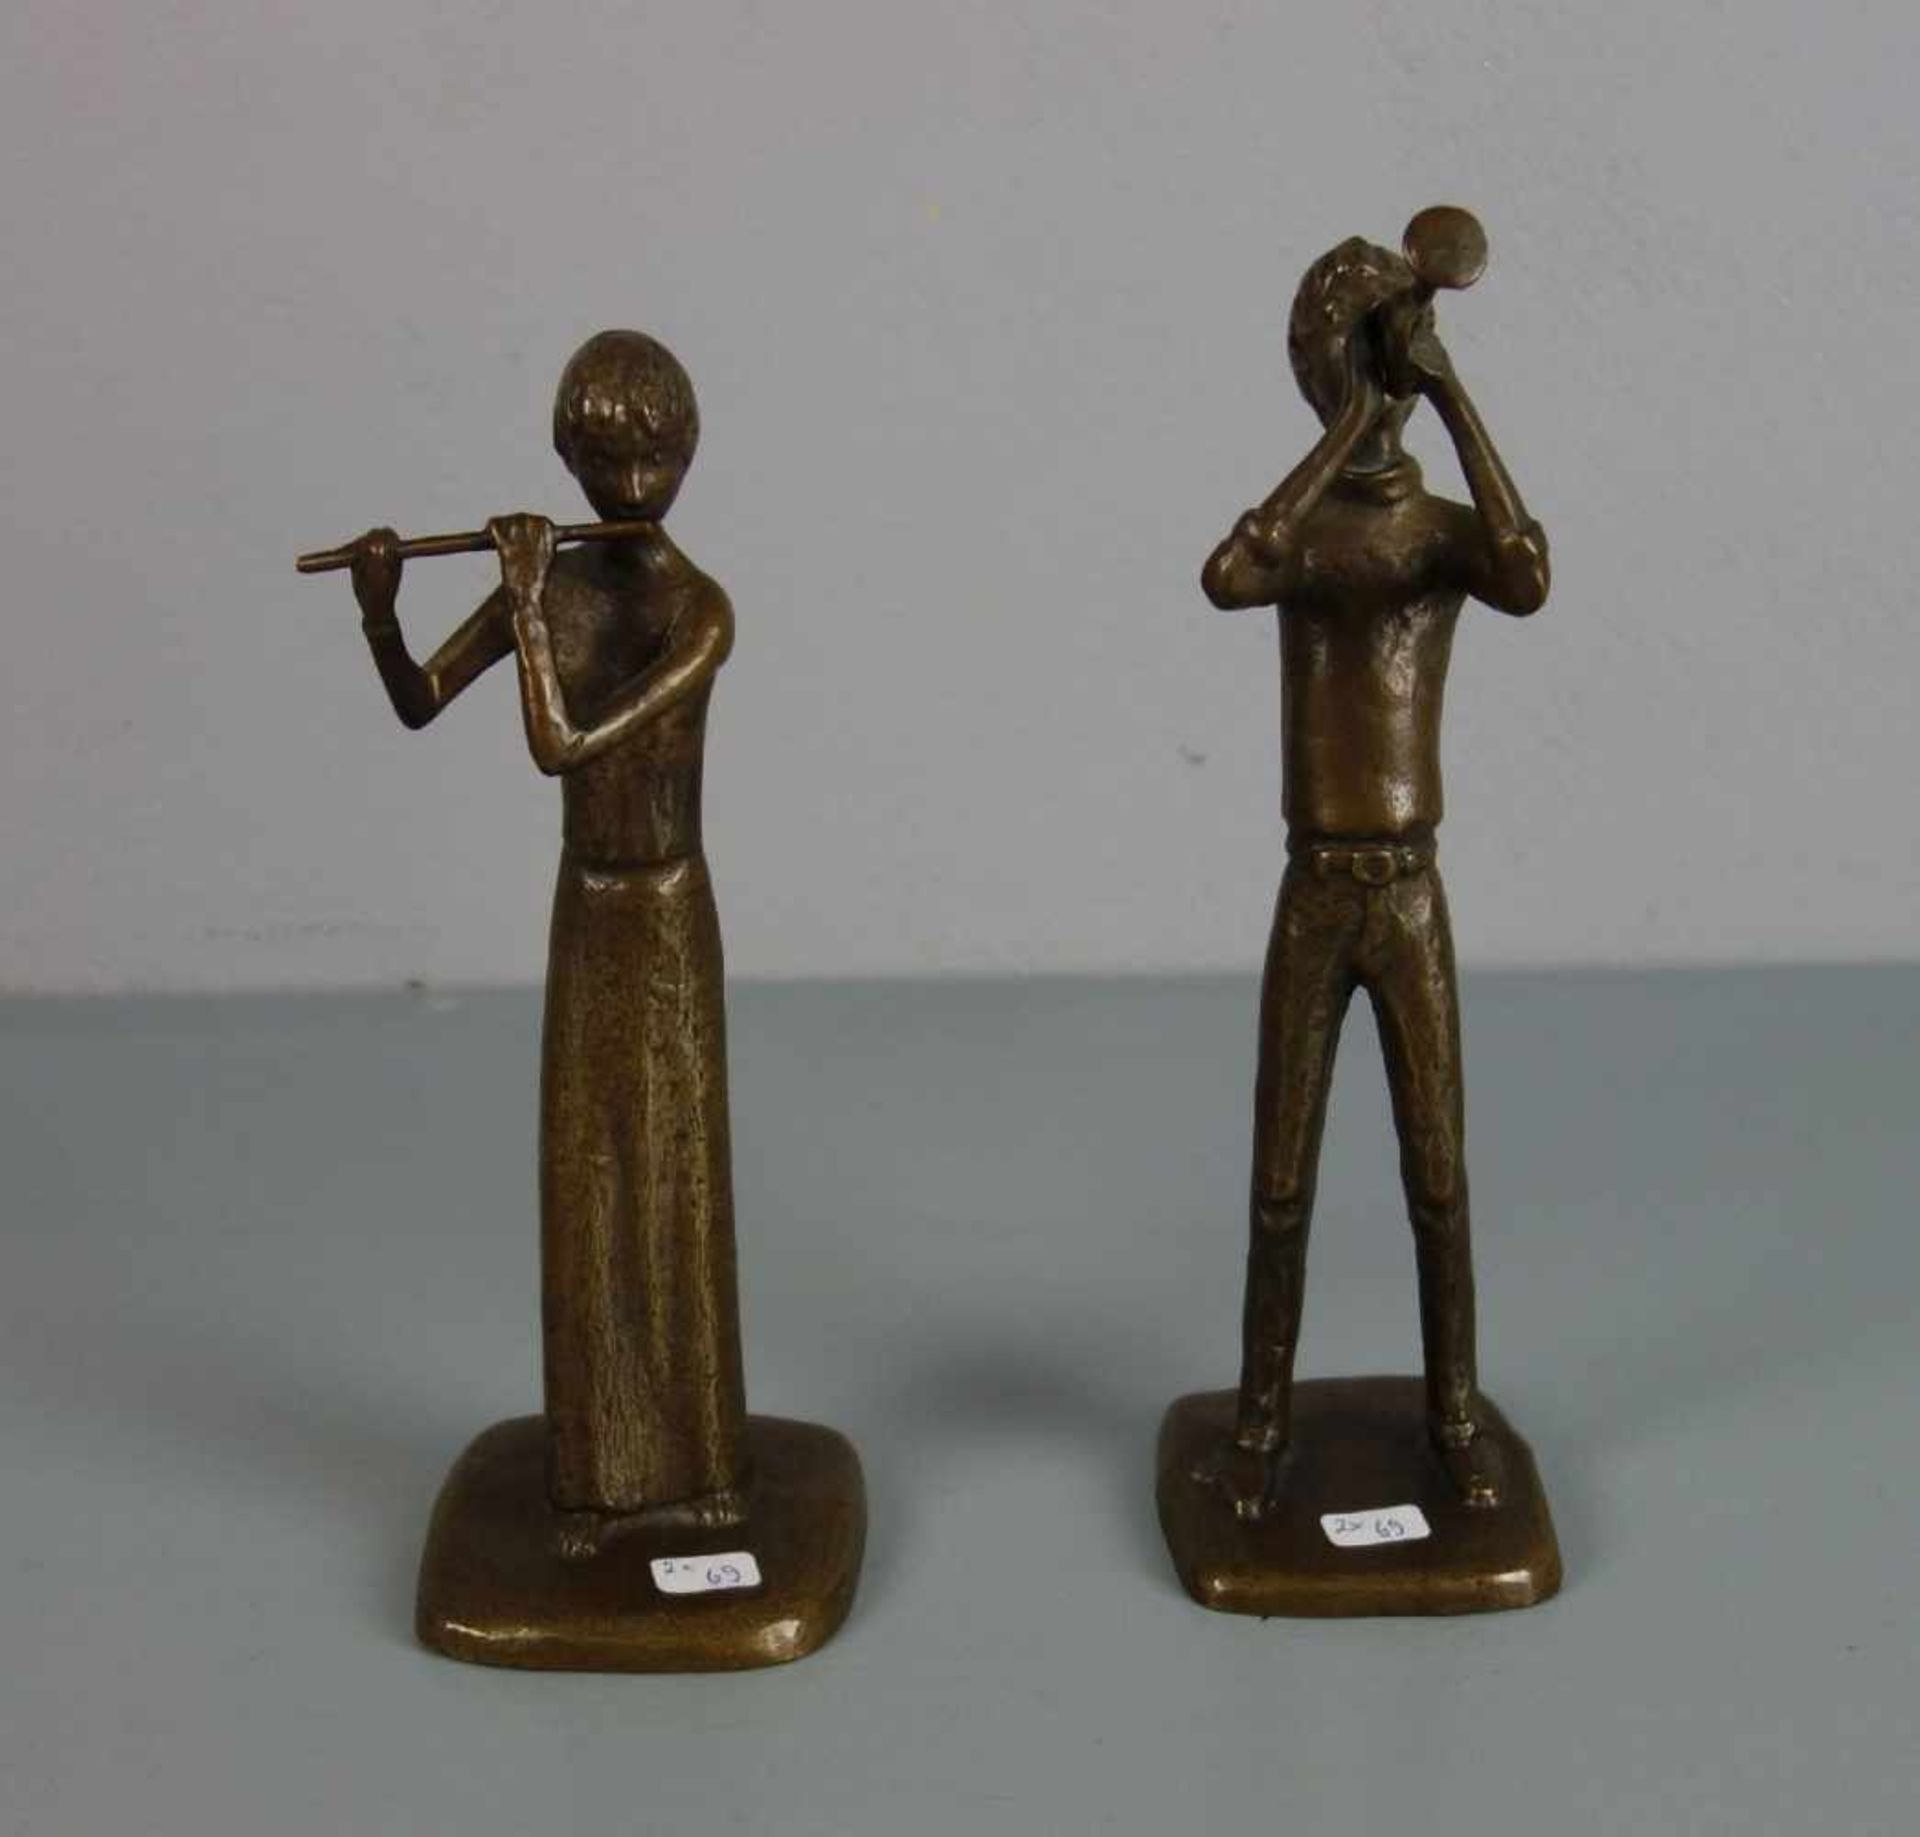 ANONYMER BILDHAUER (20. / 21. JH.), Paar Bronze - Skulpturen: "Trompeter" und "Flötistin" / two